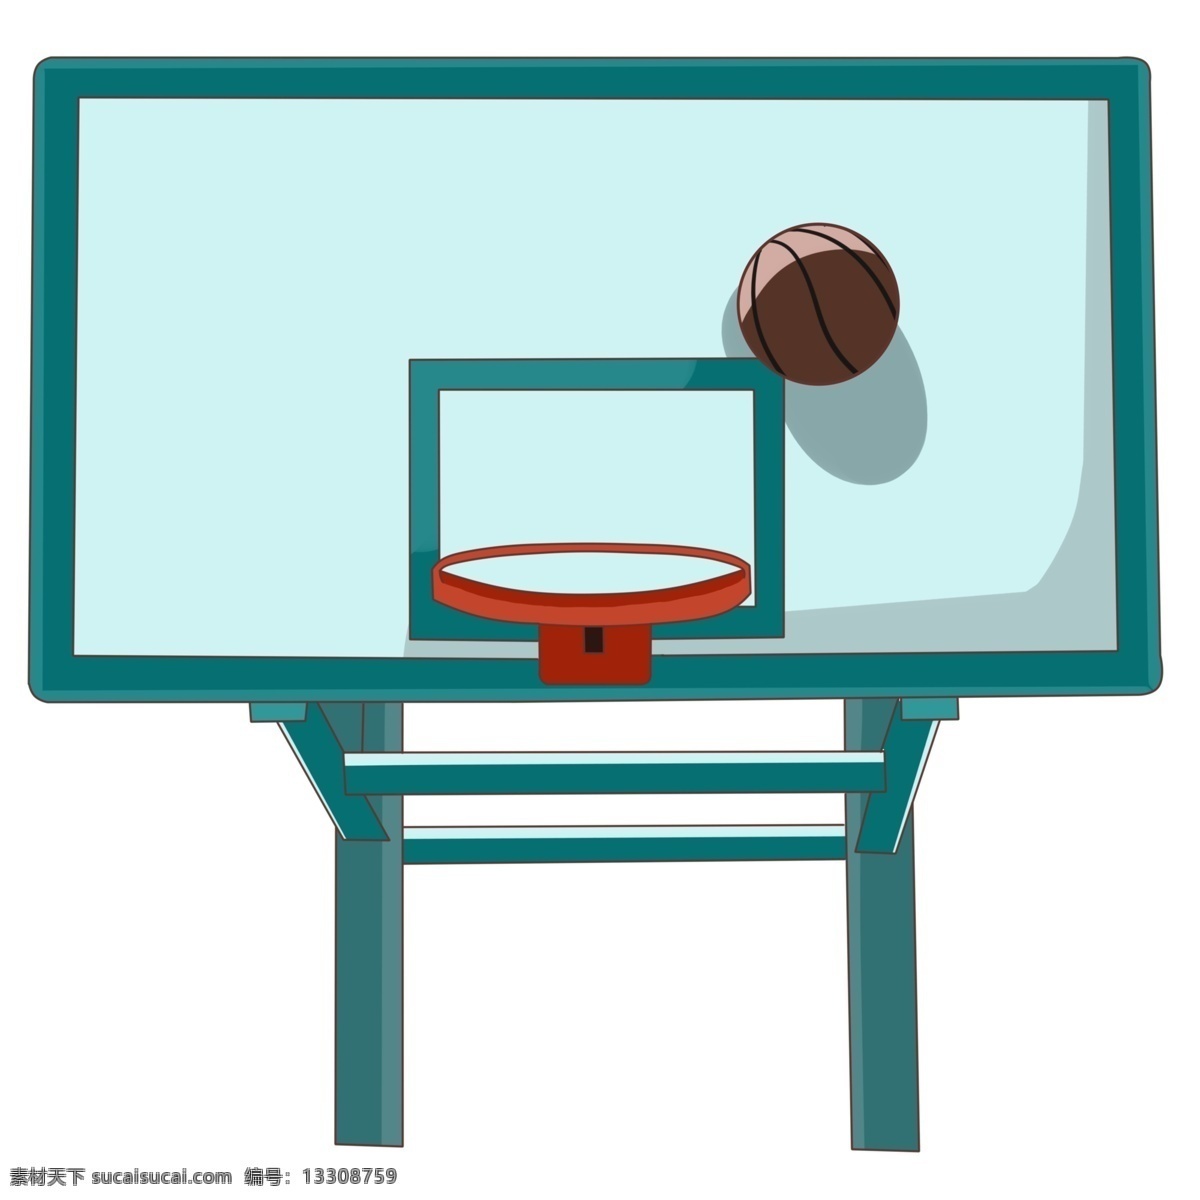 篮球 框 篮板球 篮 插画 篮球框 篮板球篮 篮球球门球框 打篮球 体育运动器材 校园篮球 小区篮球 运动 体育